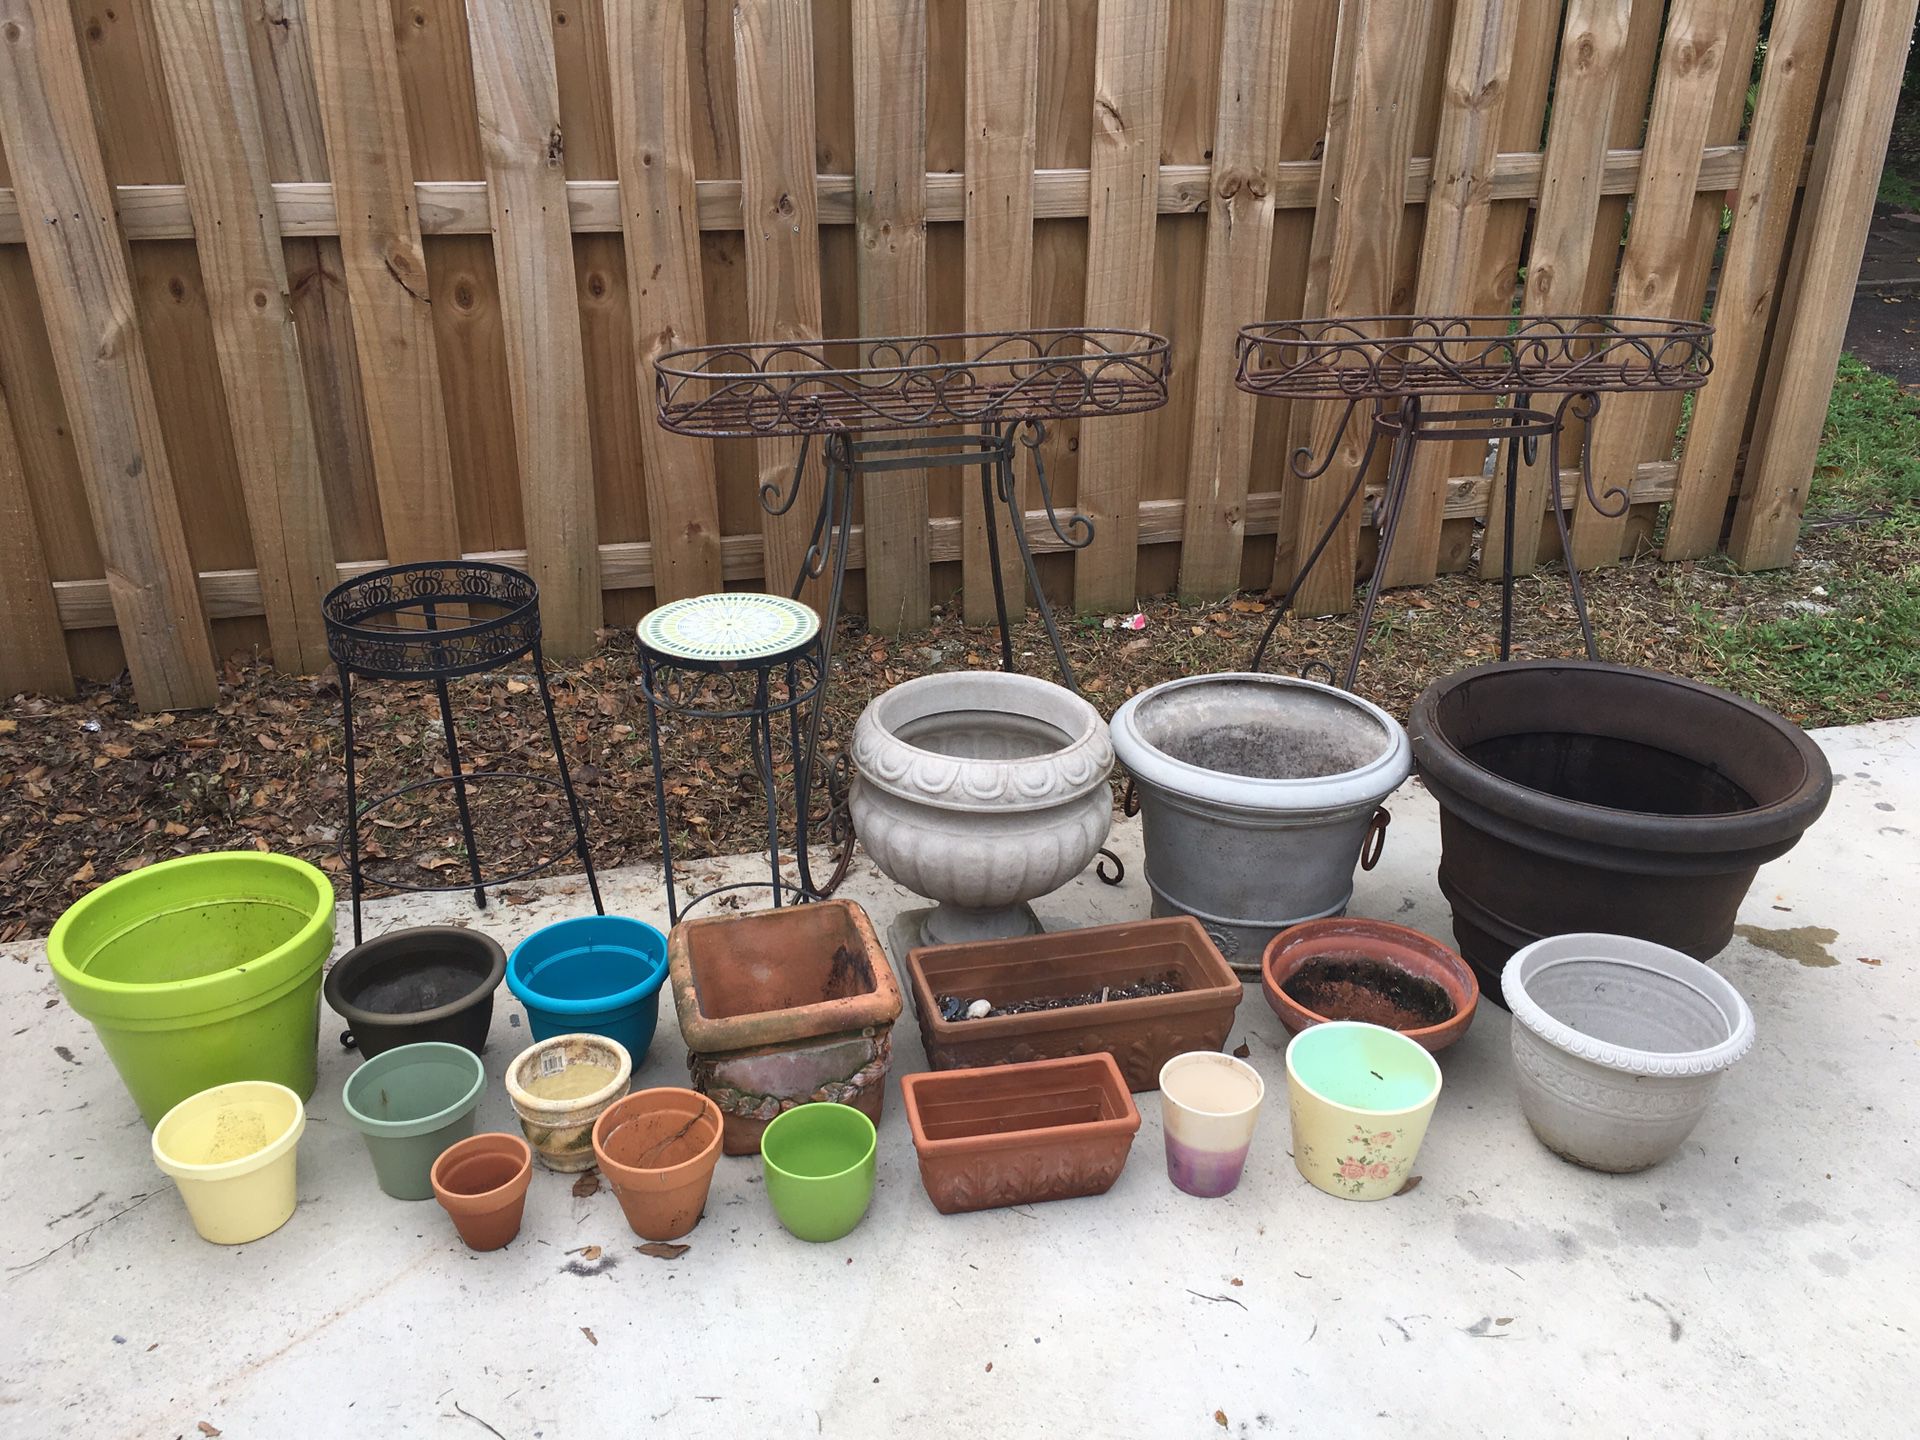 Flower pots/ garden items